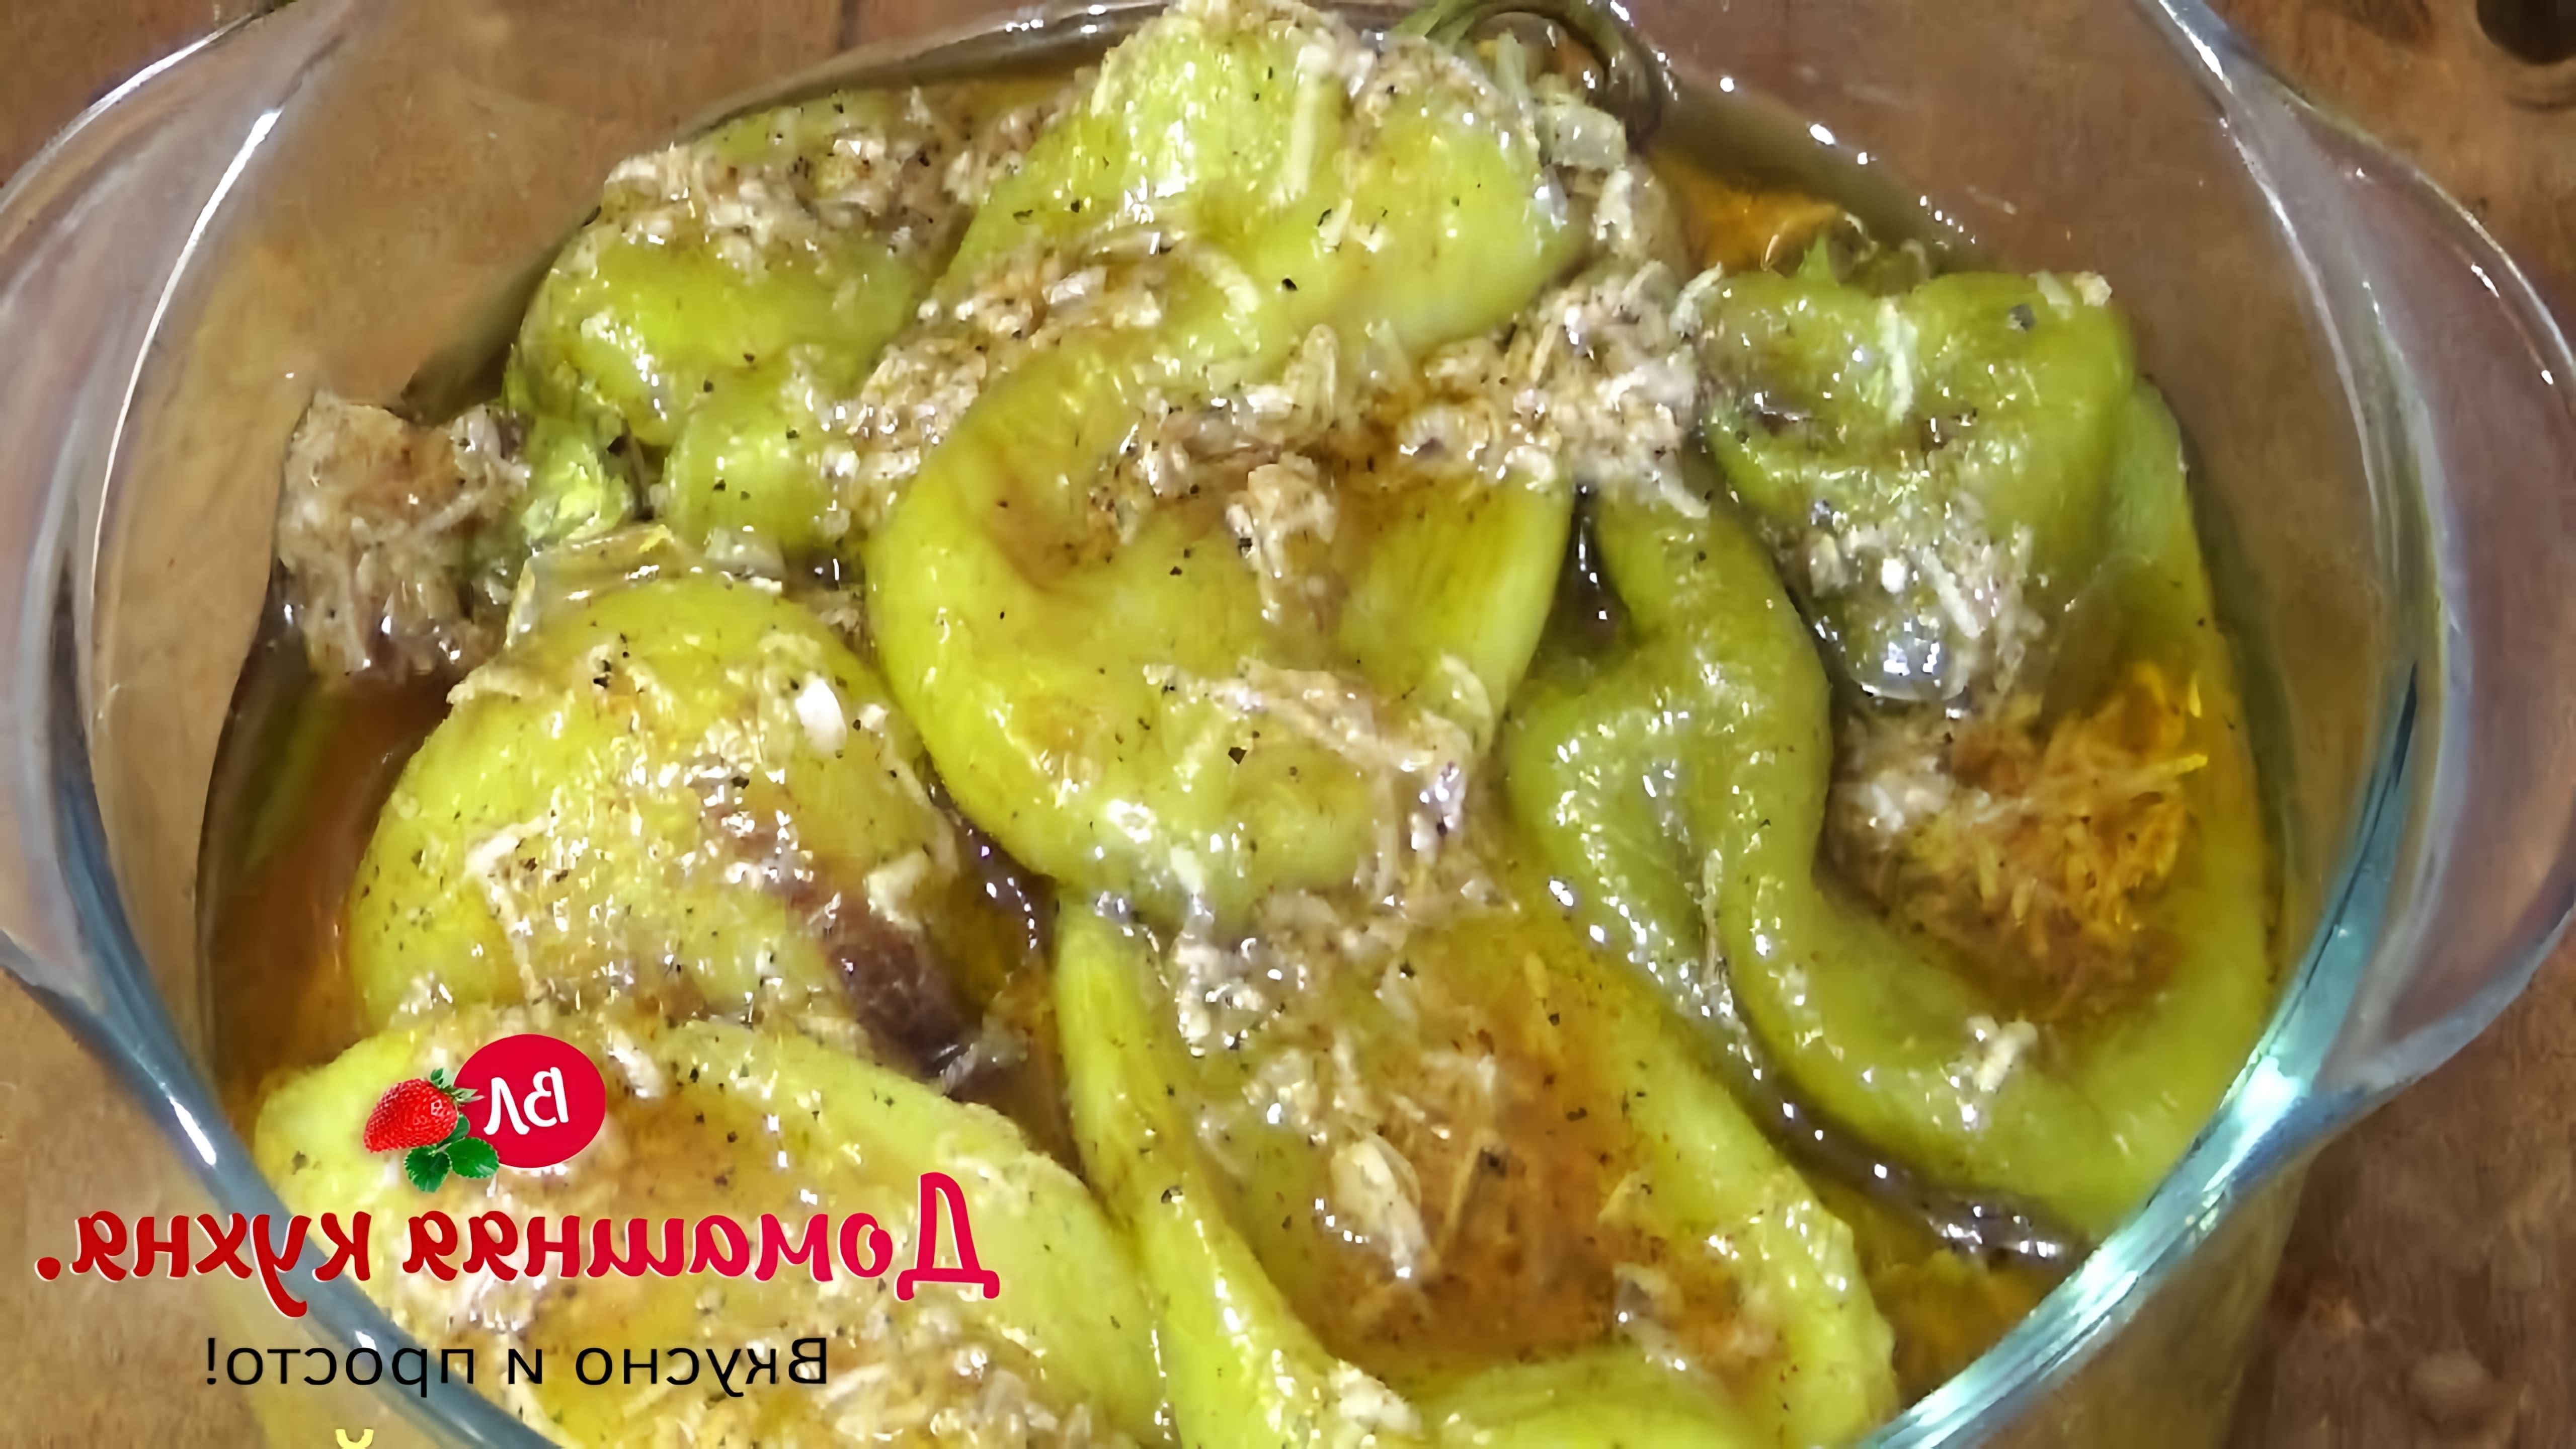 В этом видео демонстрируется процесс приготовления бомбической закуски из болгарского перца